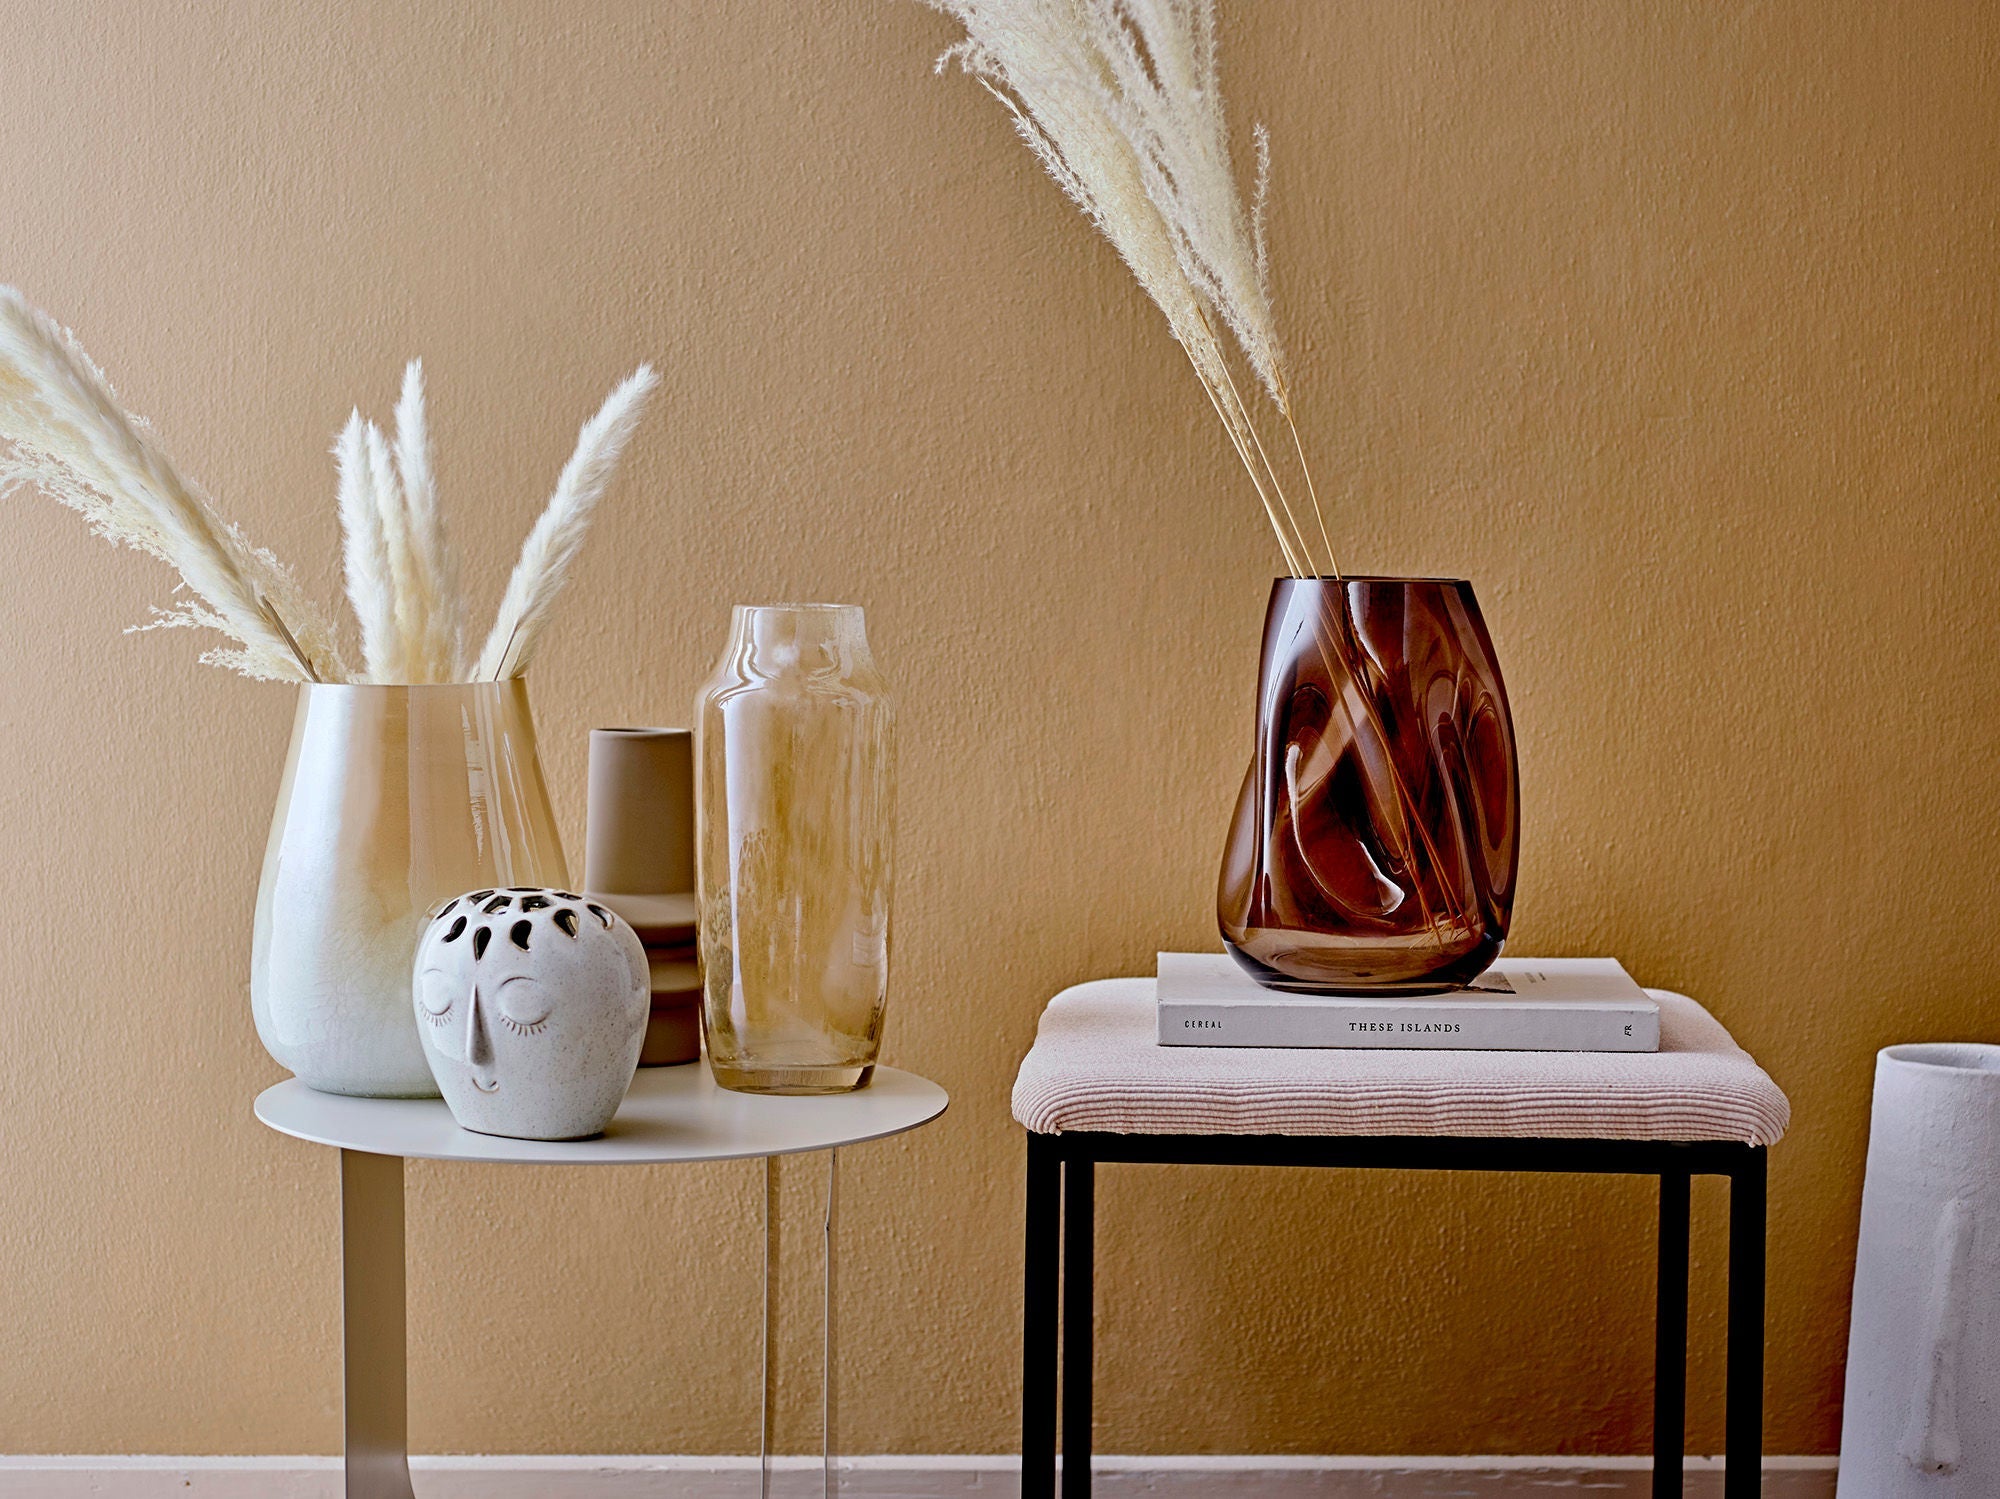 Bloomingville Berican Deco Vase, blanc, terre cuite